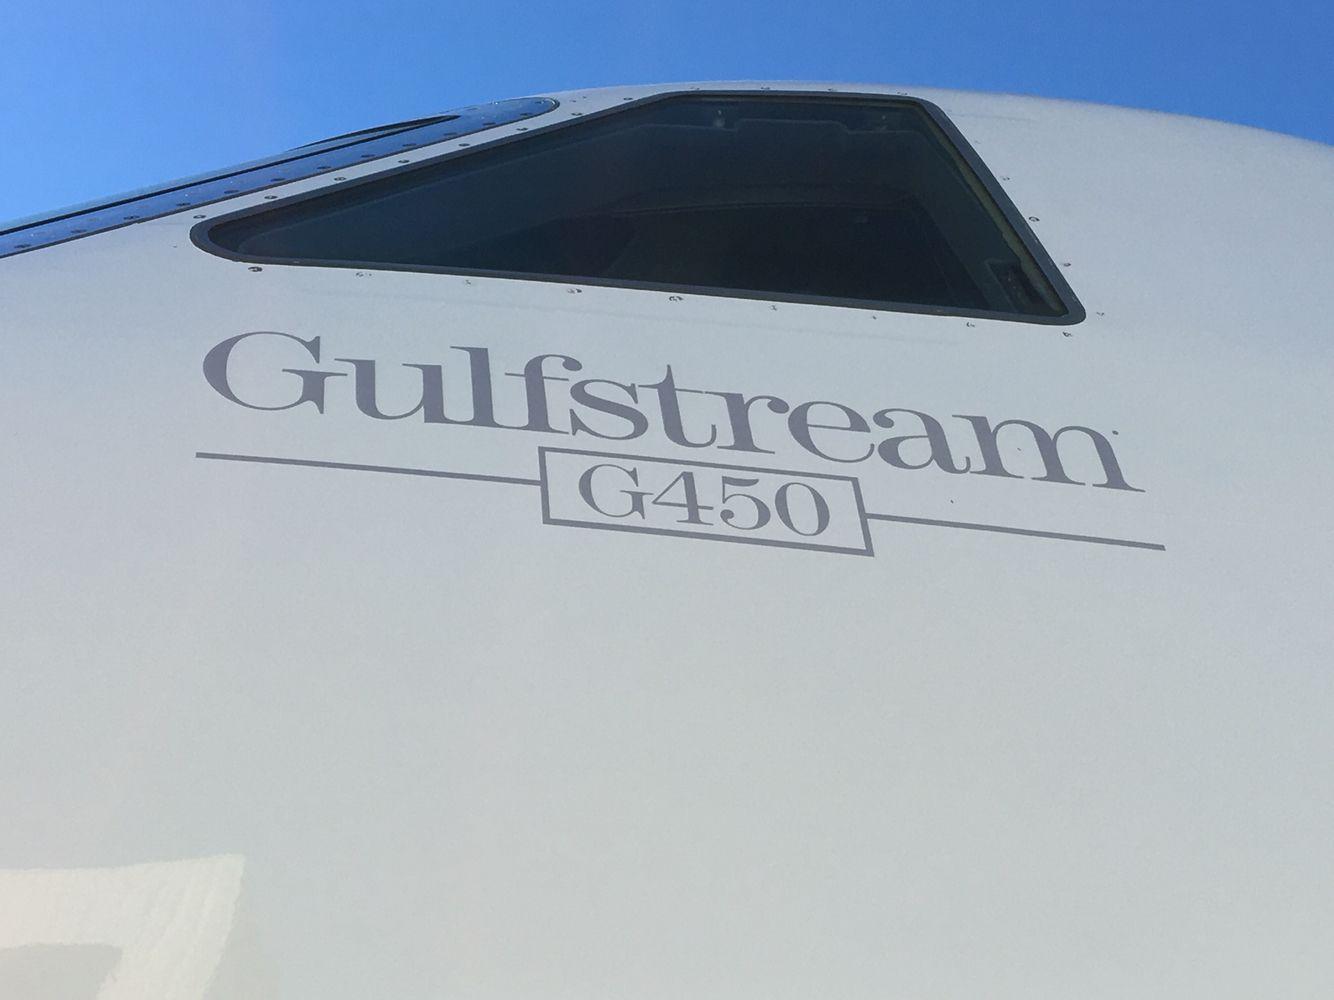 Gulfstream Logo - Gulfstream G450 logo. Gulfstream G450. Plane, Logos